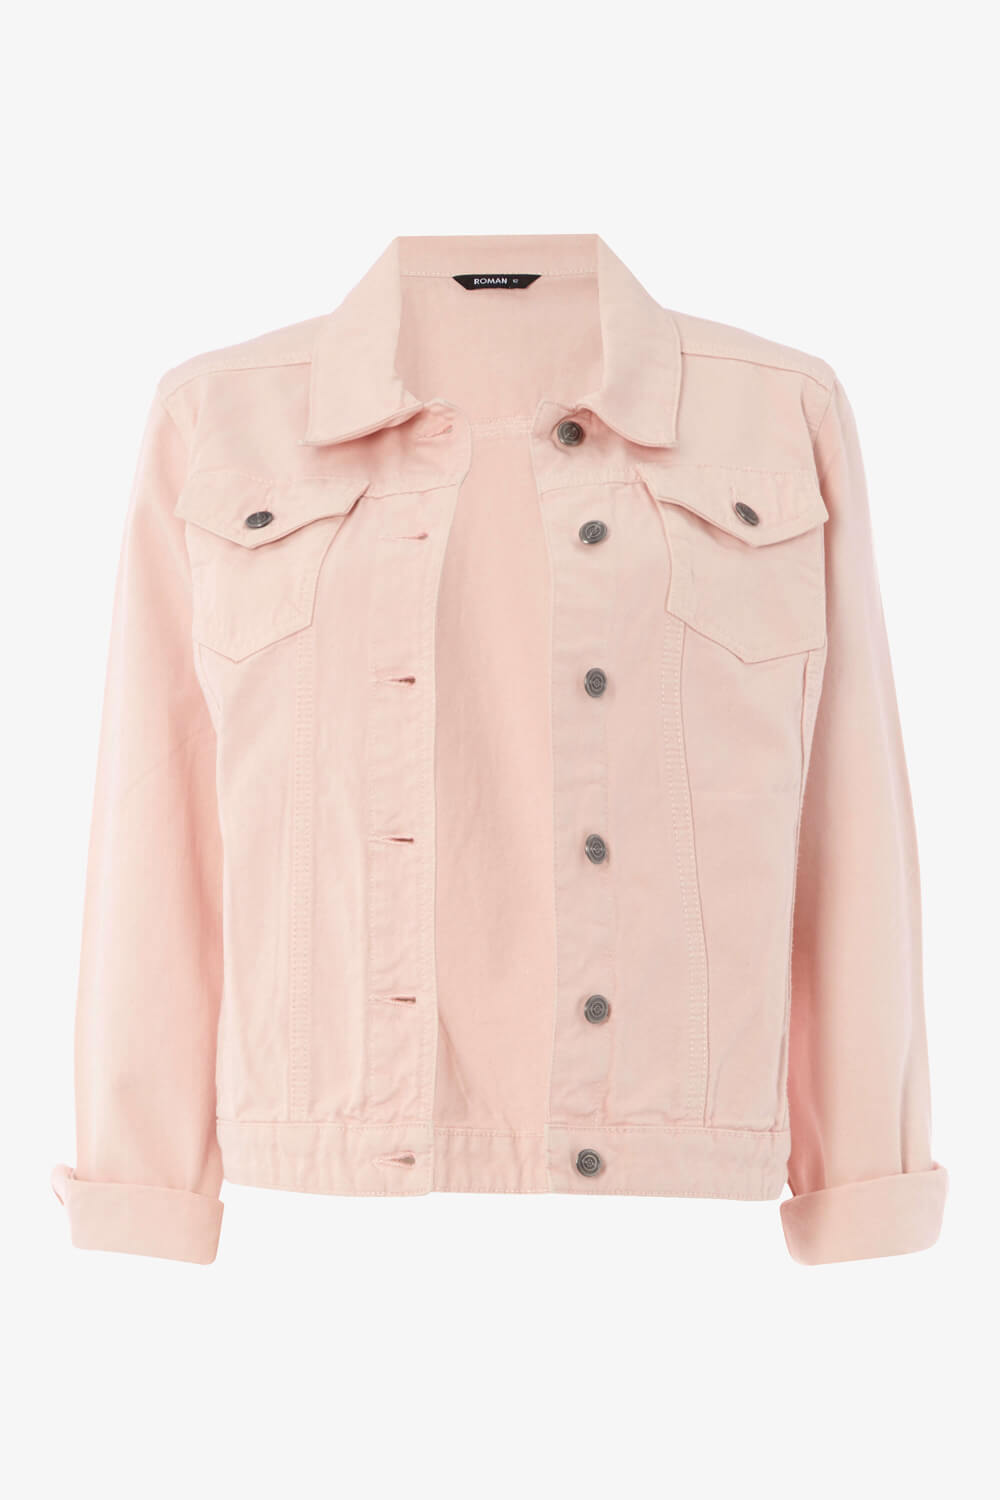 Denim Jacket in Light Pink - Roman Originals UK